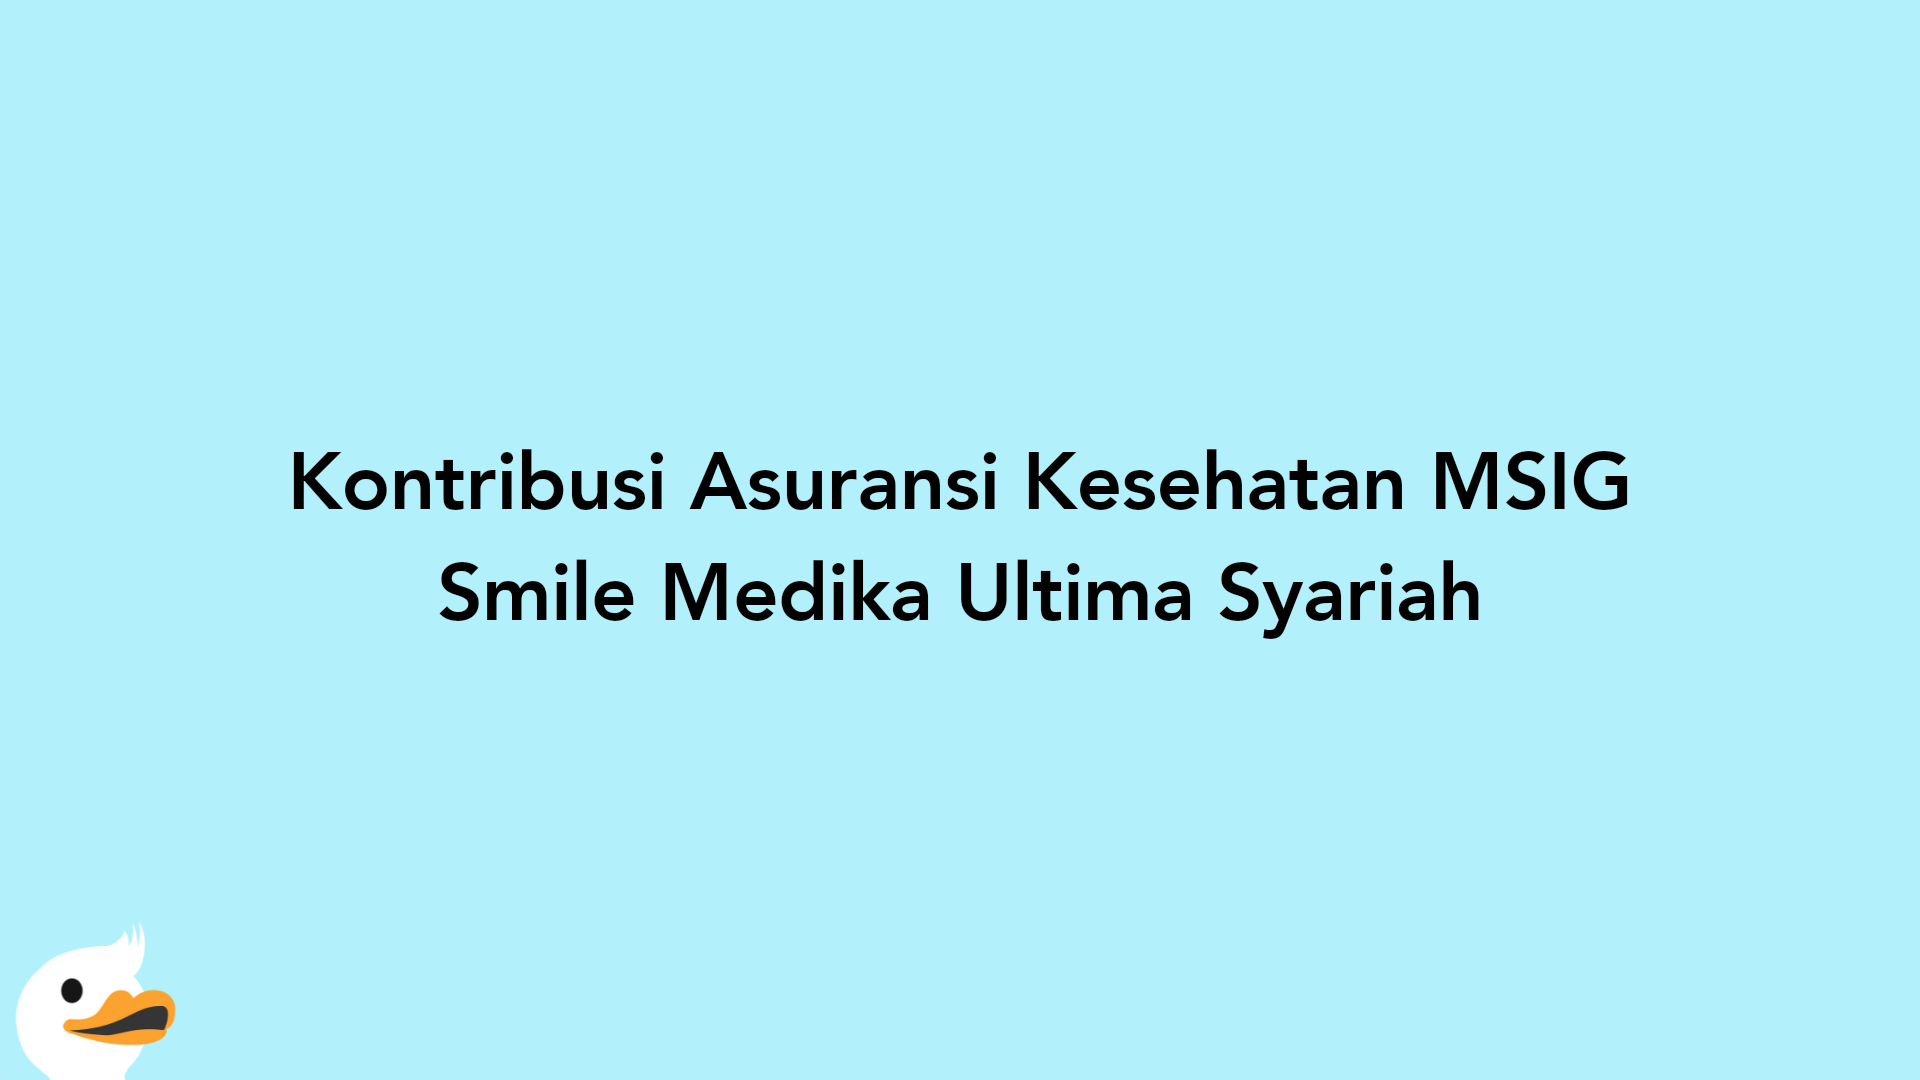 Kontribusi Asuransi Kesehatan MSIG Smile Medika Ultima Syariah